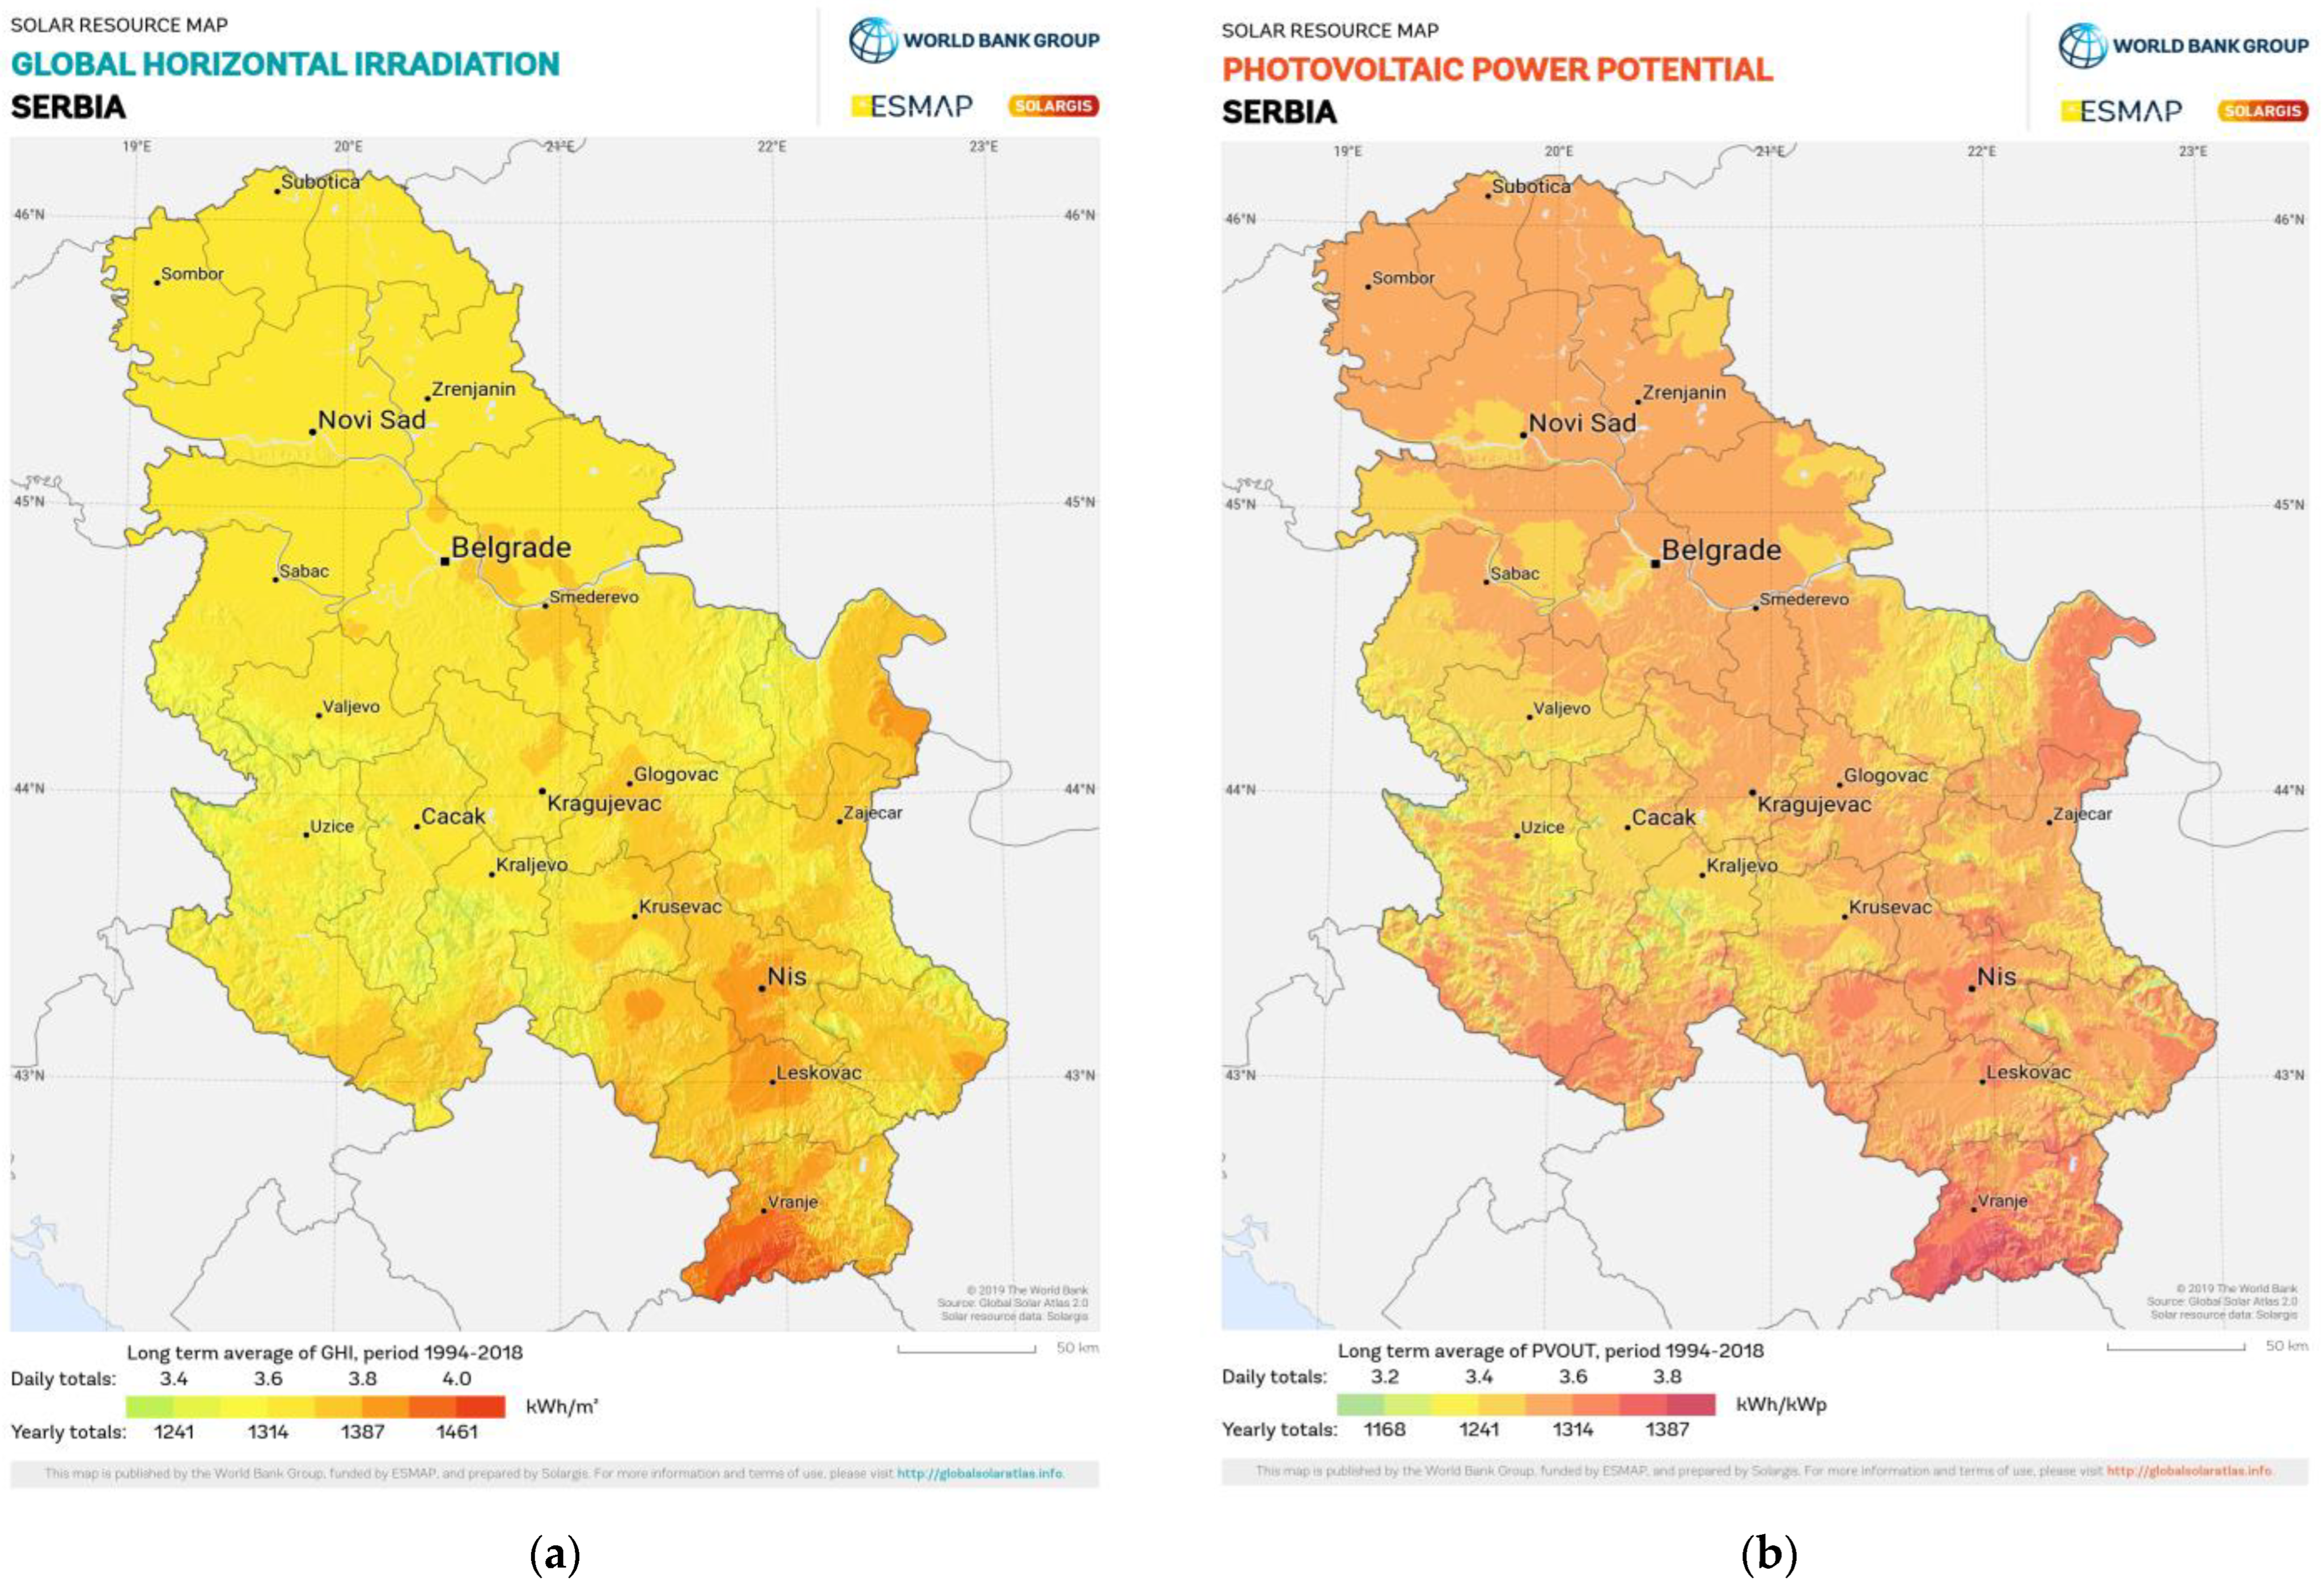 ÖKB - Marktstudie zur Energieeffizienz und Erneuerbaren Energiequellen in  der Vojvodina - Serbien - BLUESAVE